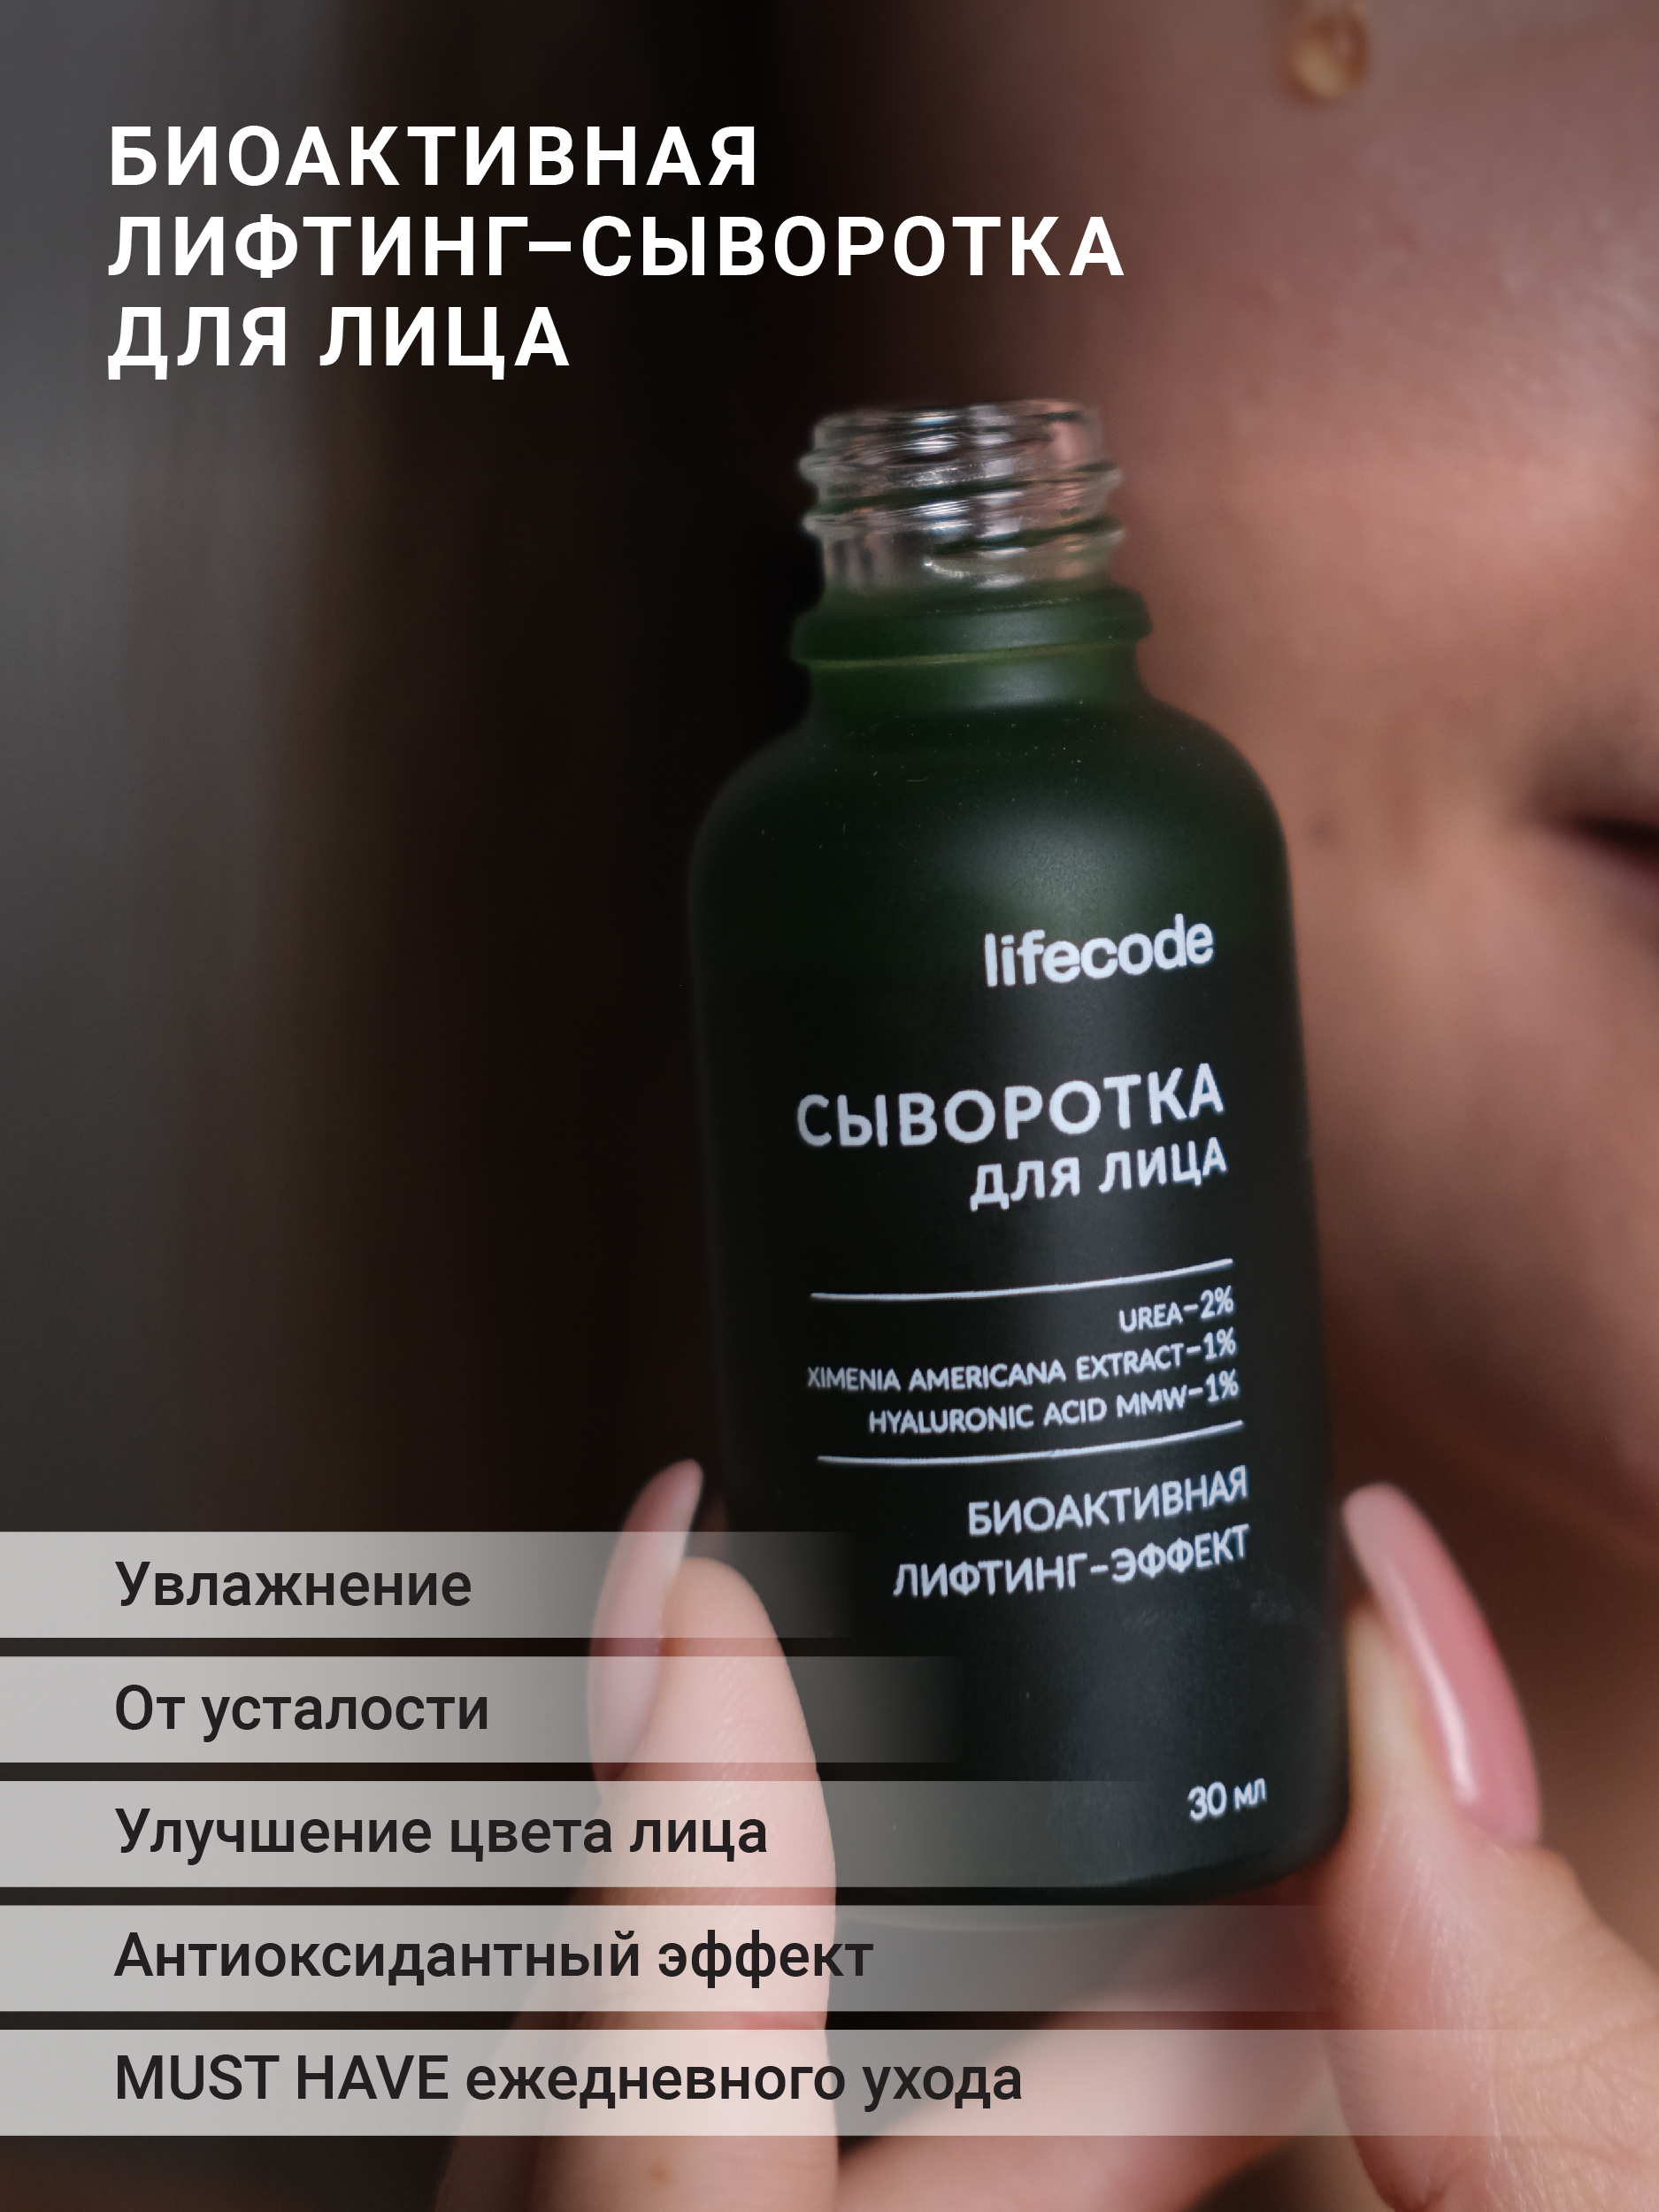 Сыворотка для лица LIFECODE с витамином C и гиалуроновой кислотой, биоактивная биоактивная сыворотка для лица лифтинг